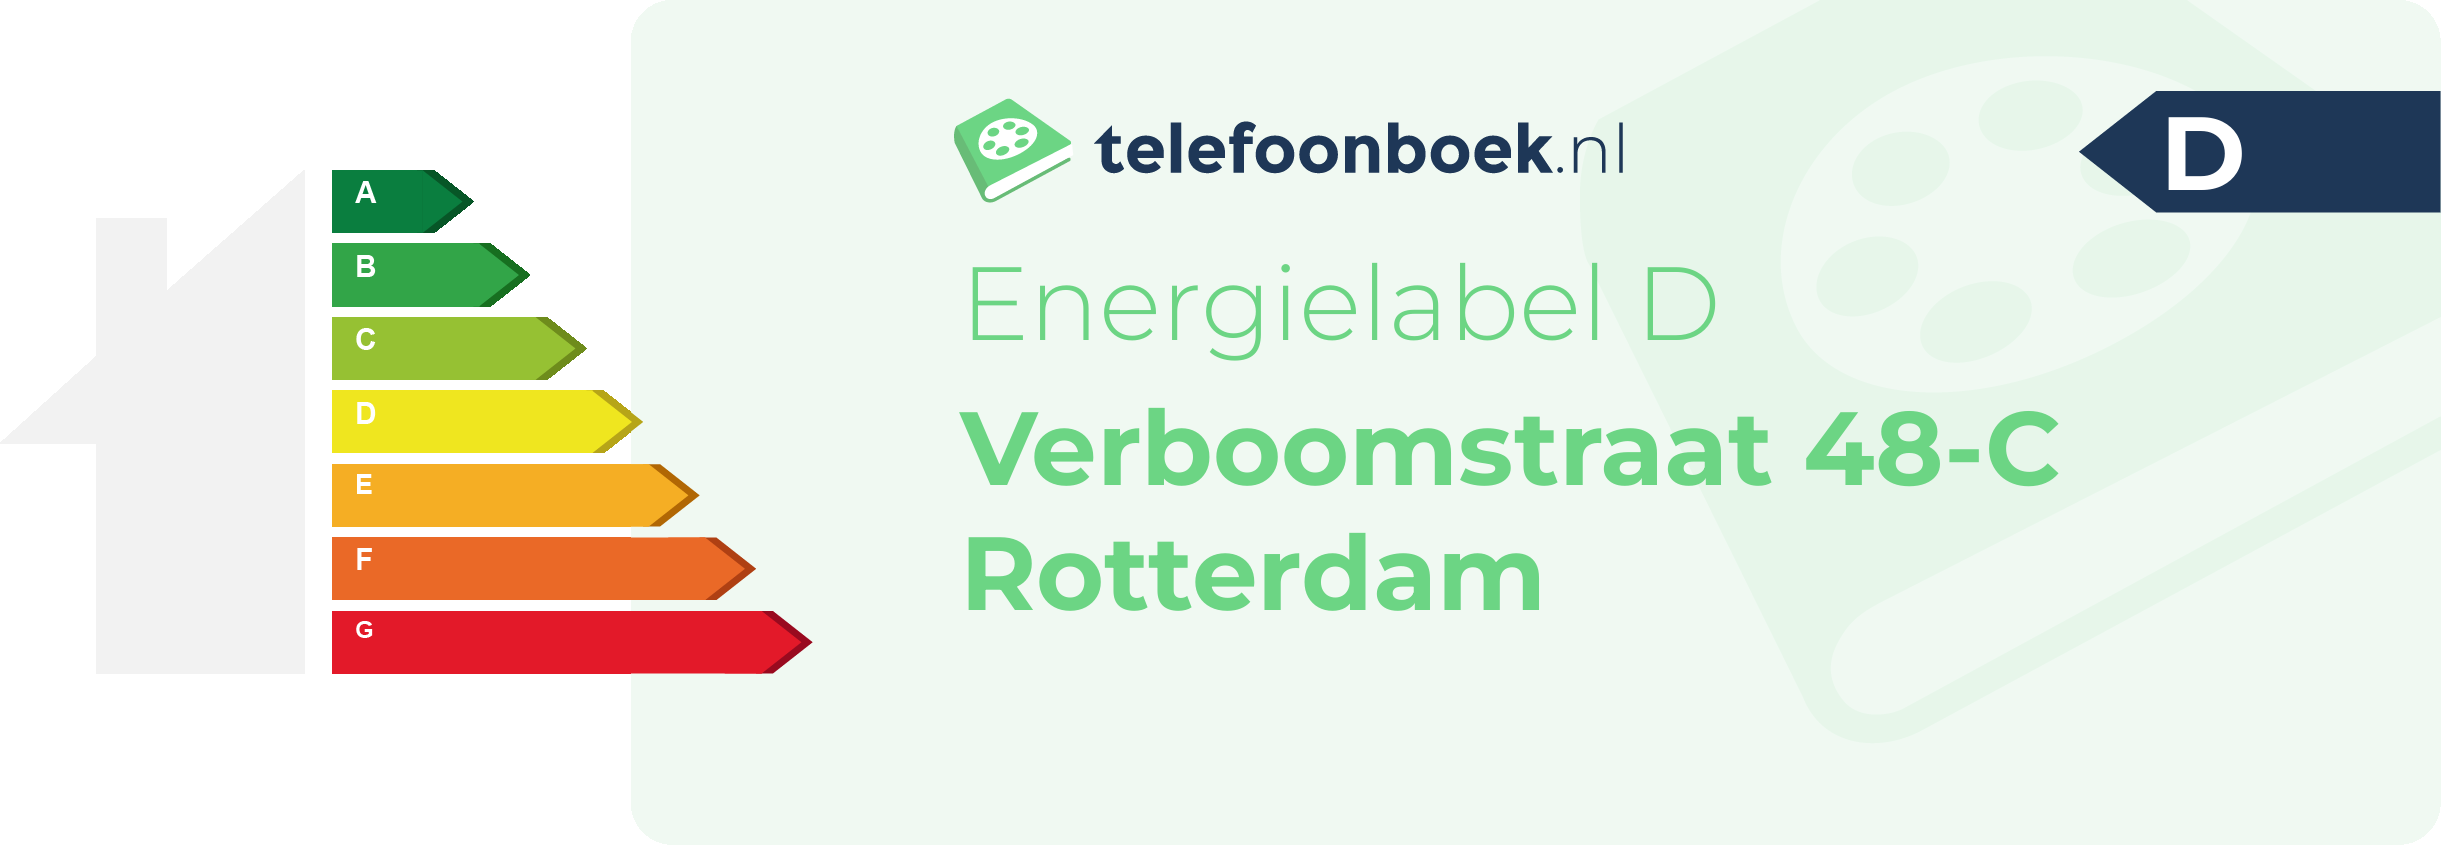 Energielabel Verboomstraat 48-C Rotterdam